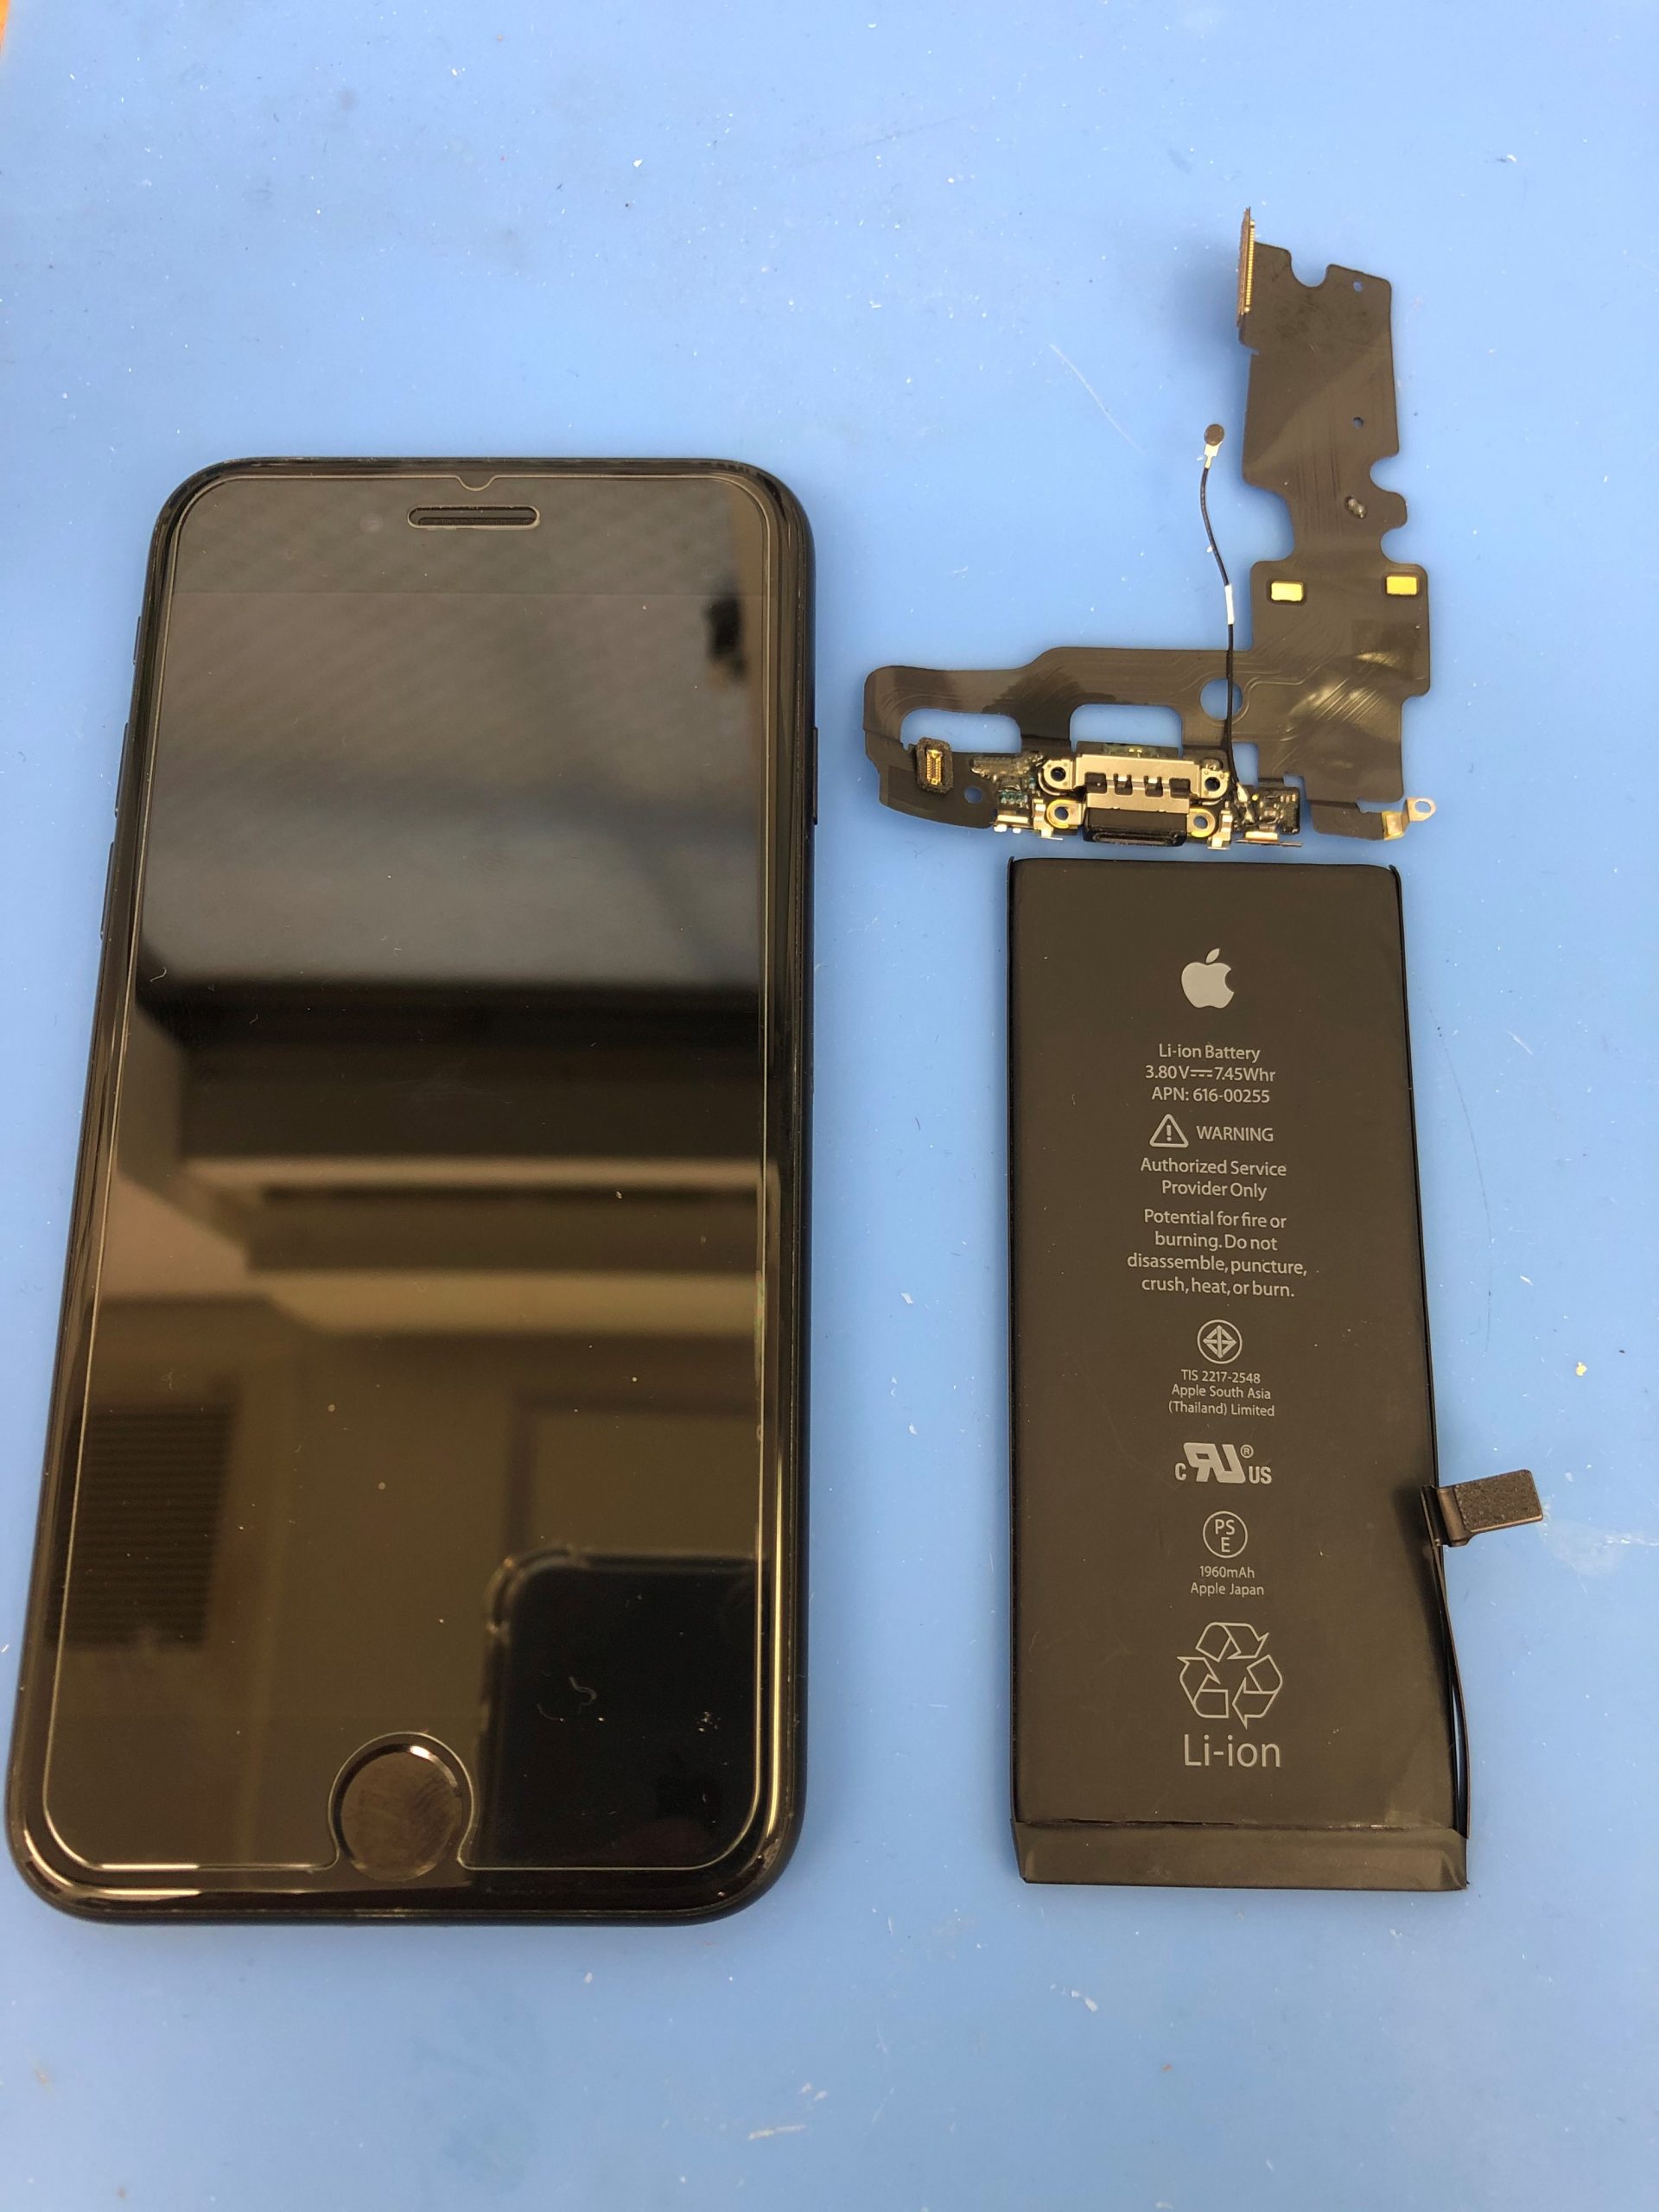 バッテリー交換最短15分で修理可能です！iPhone修理ジャパン川越店。